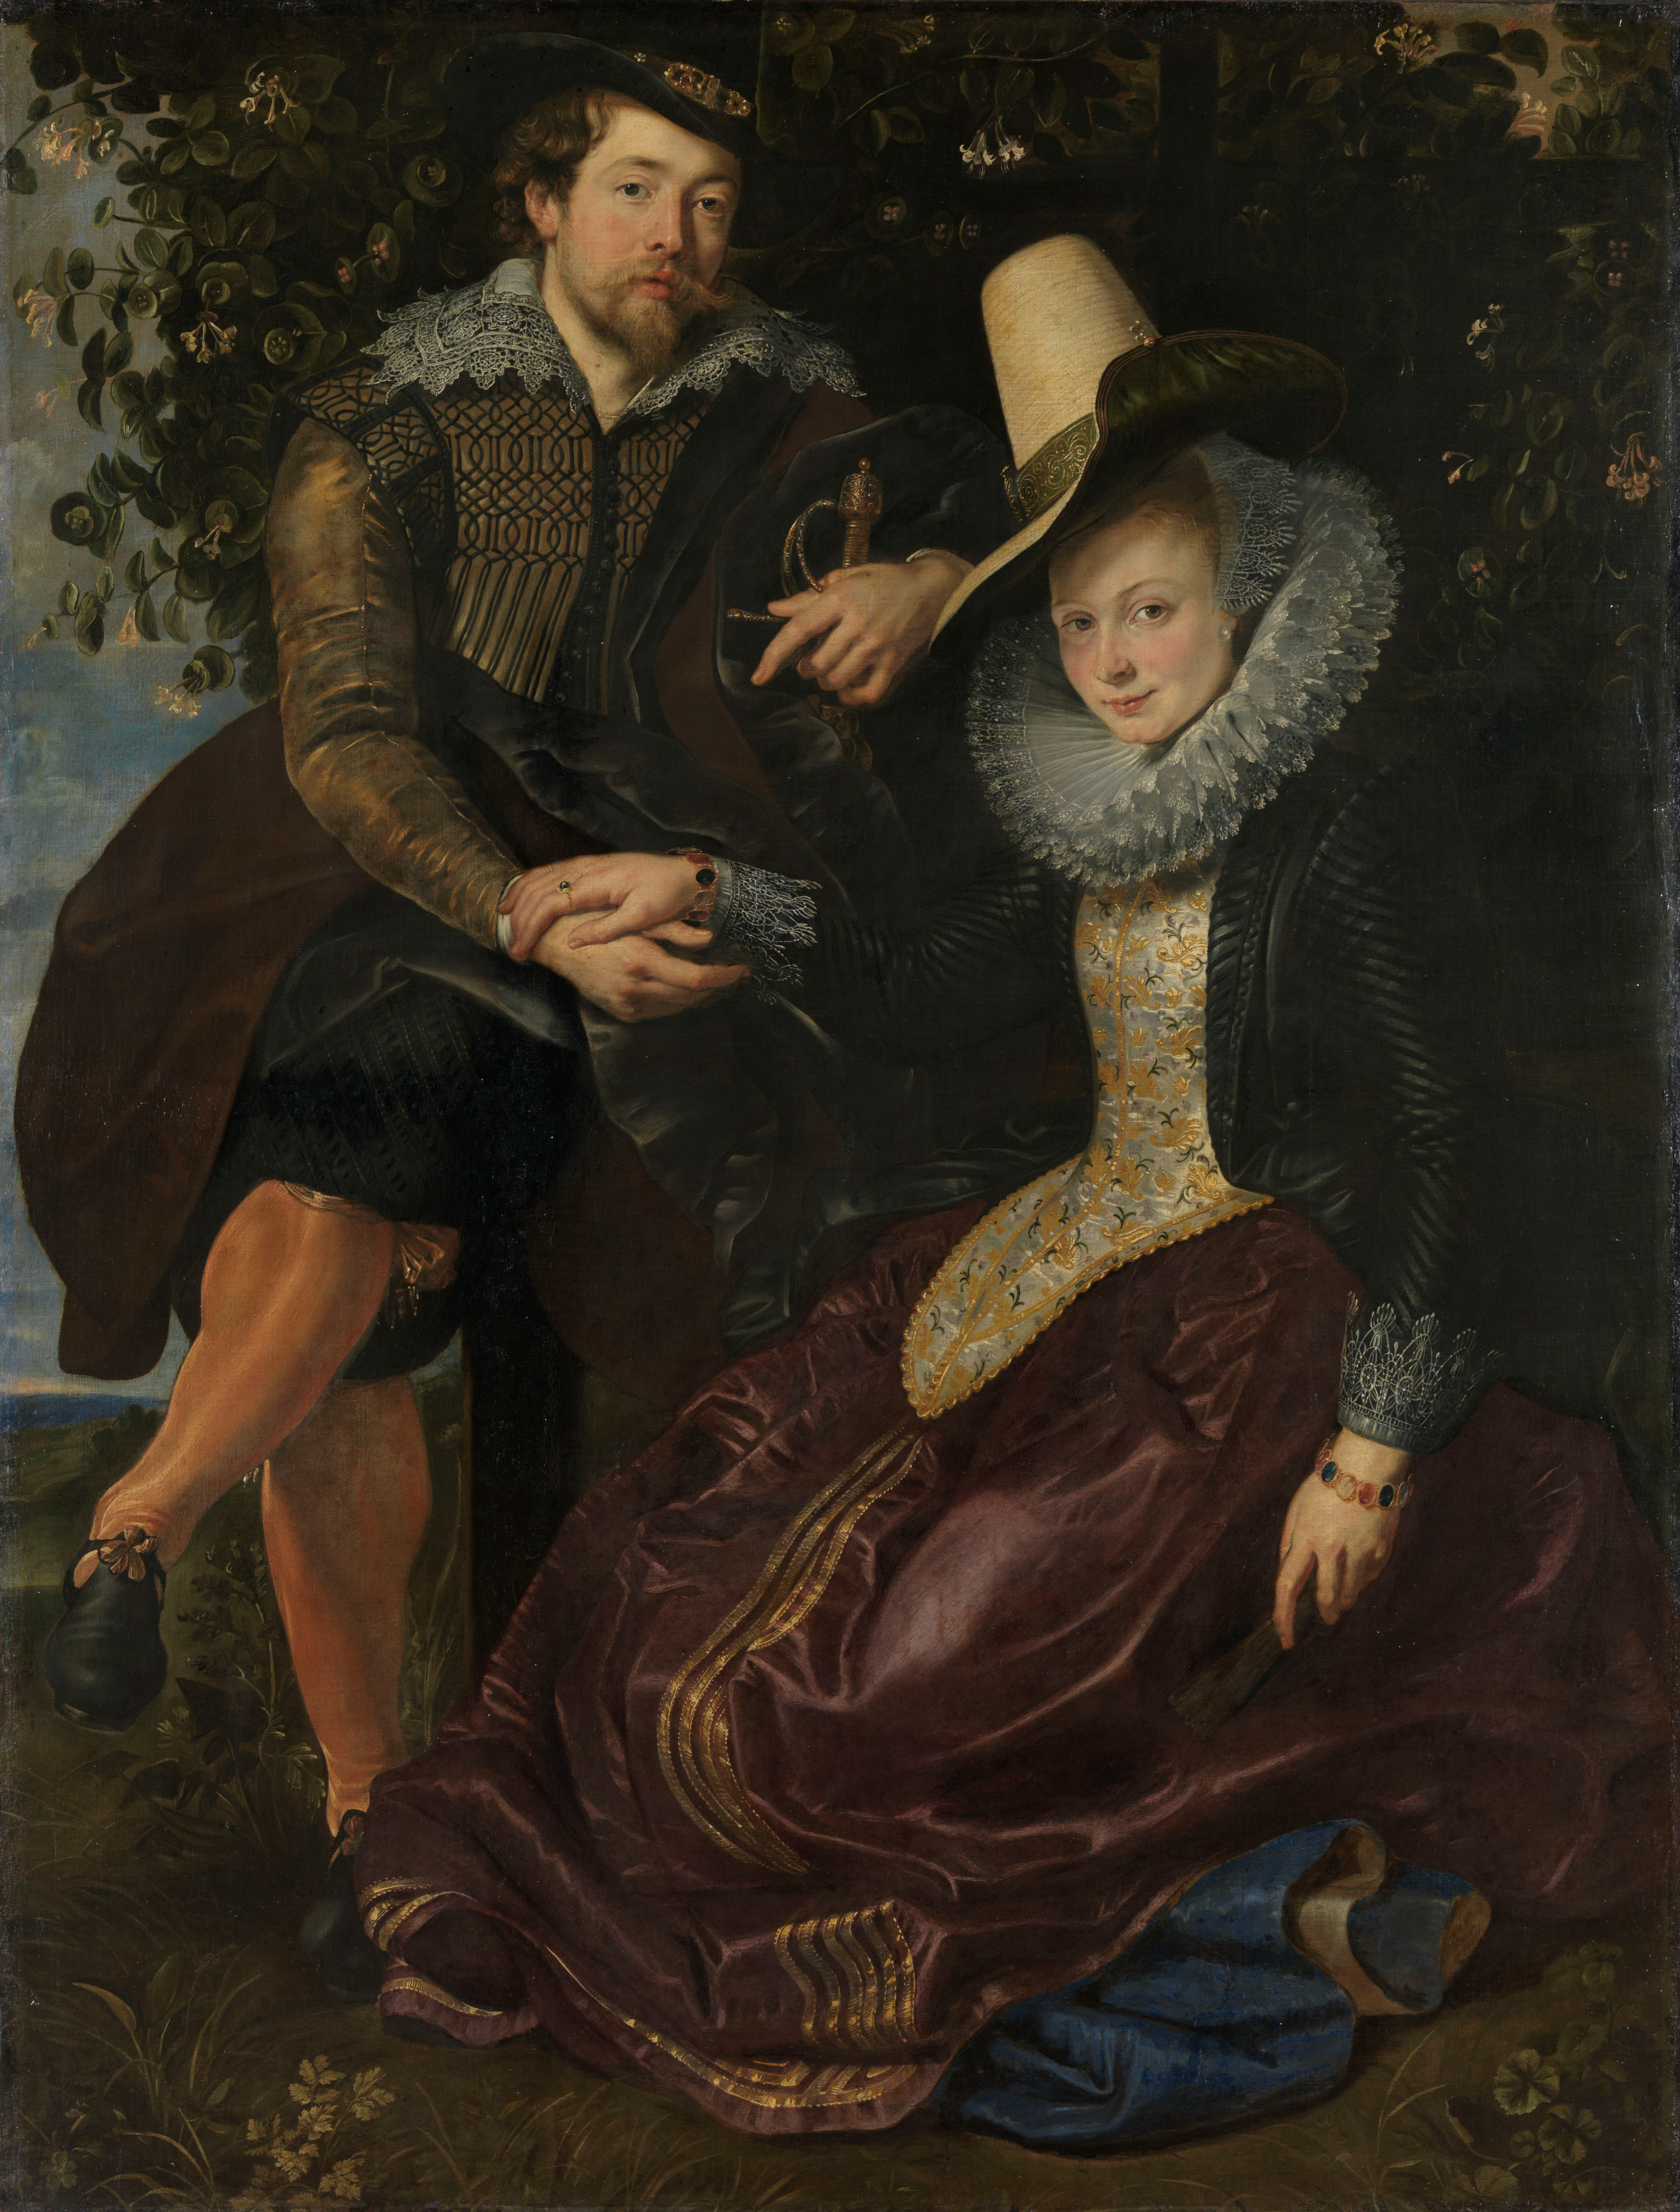 Lonc-lugas by Peter Paul Rubens - 1609/10 körül - 178 x 136,5 cm 